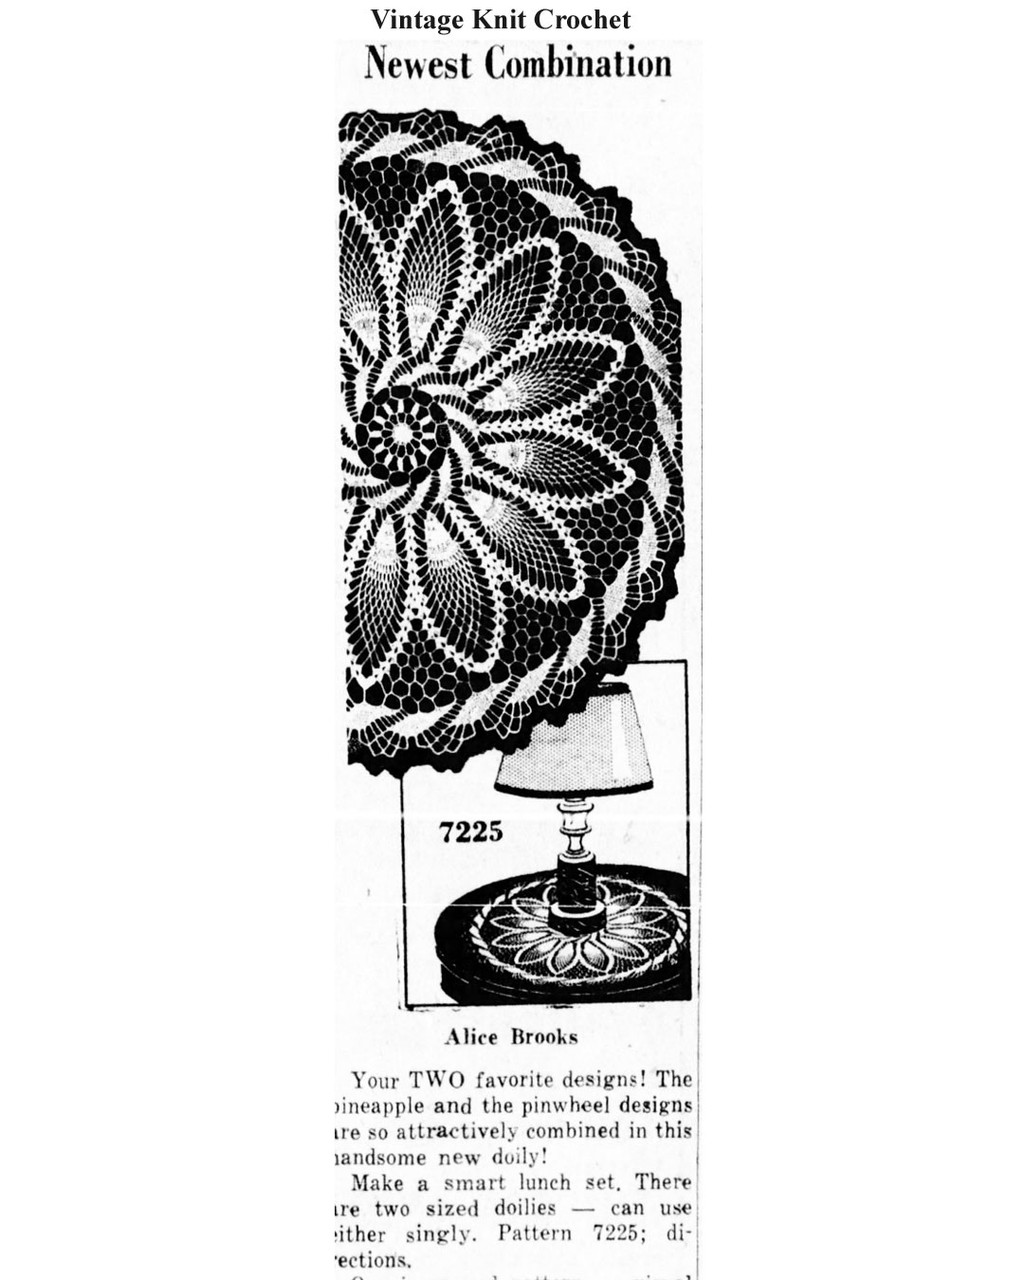 Mail Order Design 7225 Crochet Doilies Newspaper Advertisement 